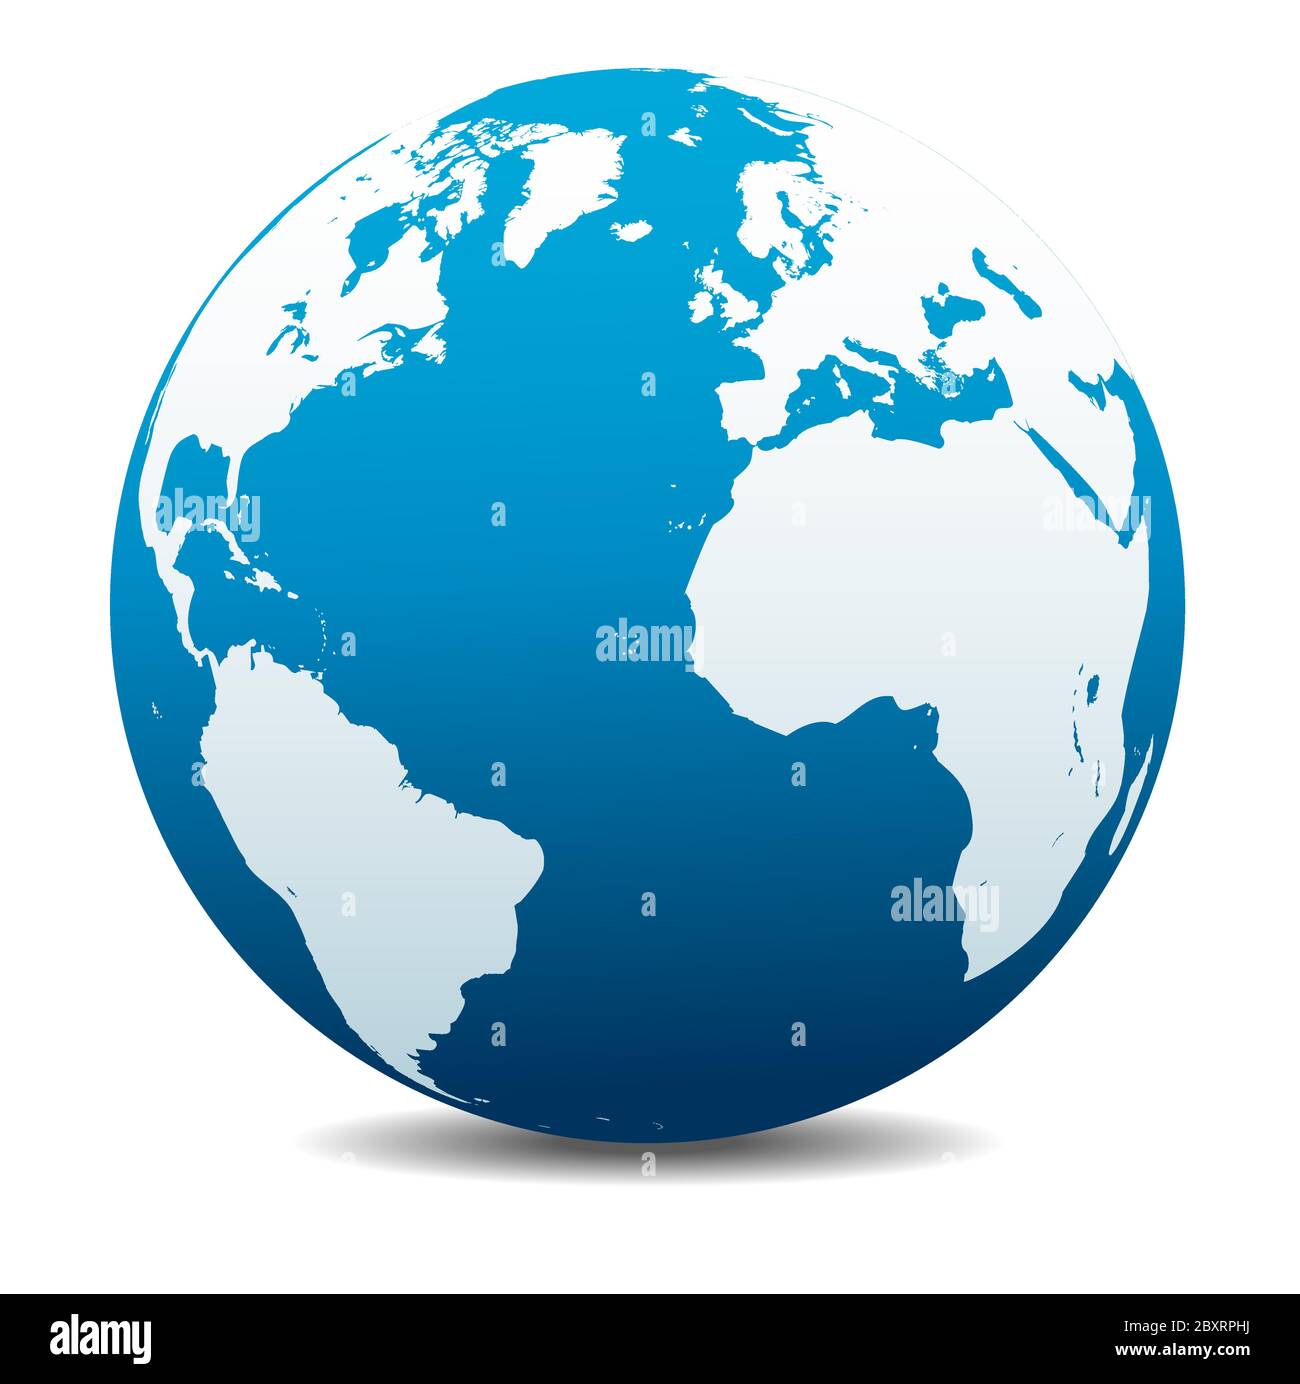 Europa, Nord e Sud America, Africa. Icona Mappa vettoriale del globo mondiale, Terra. Tutti gli elementi si trovano su singoli livelli nel file vettoriale. Illustrazione Vettoriale